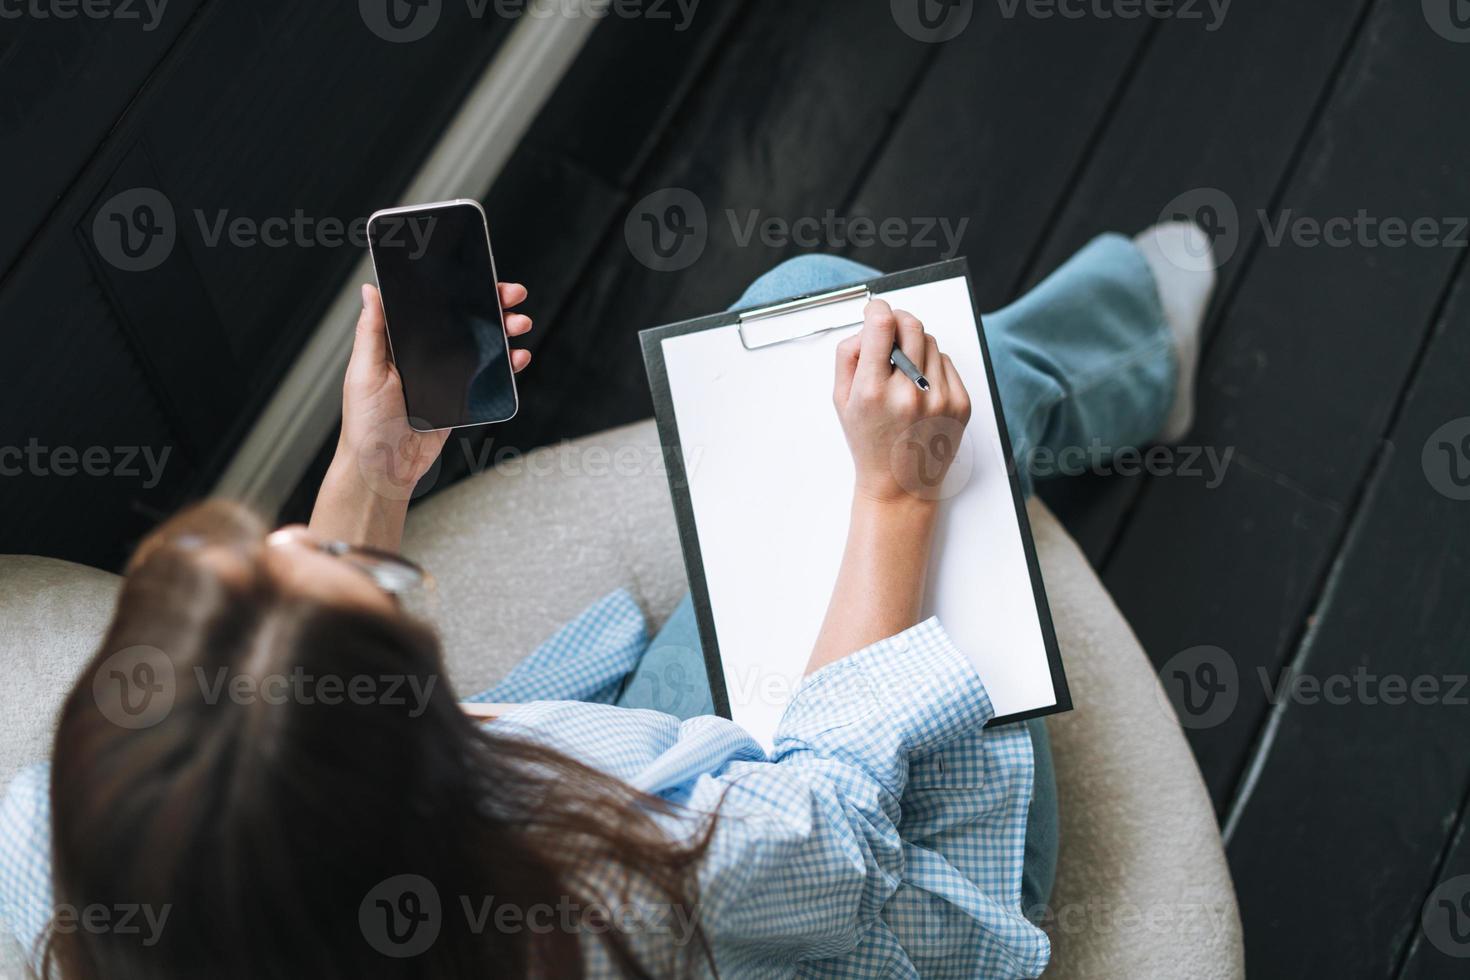 beskära Foto av ung kvinna i bue skjorta med anteckningar i händer använder sig av mobil telefon på stol i rum